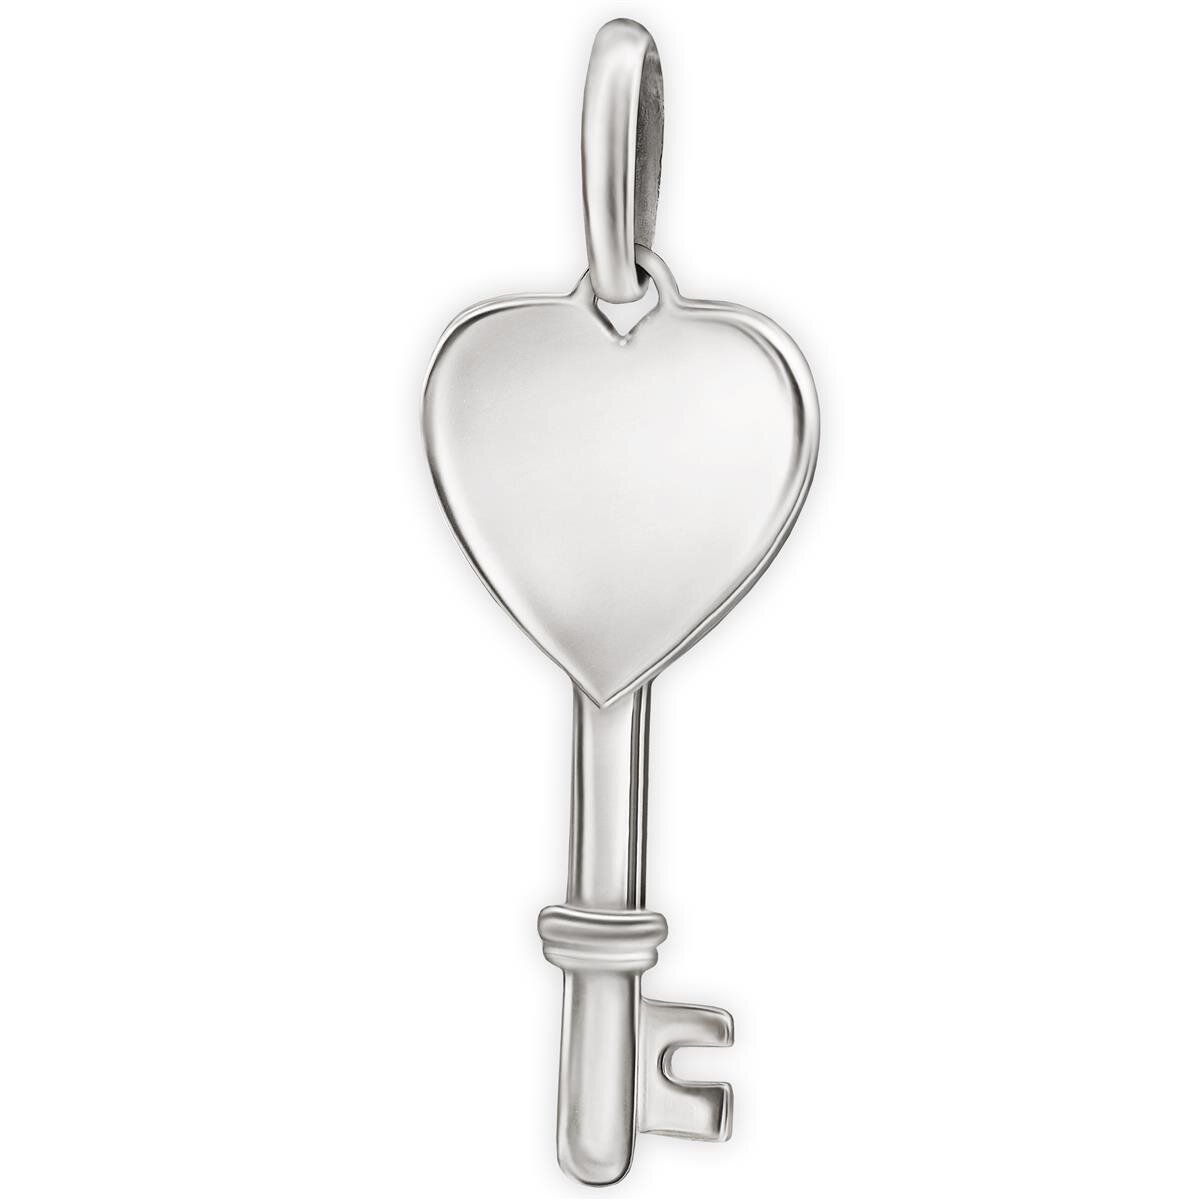 Silberner Anhänger Schlüssel in Herzform glänzend Echt Silber 925